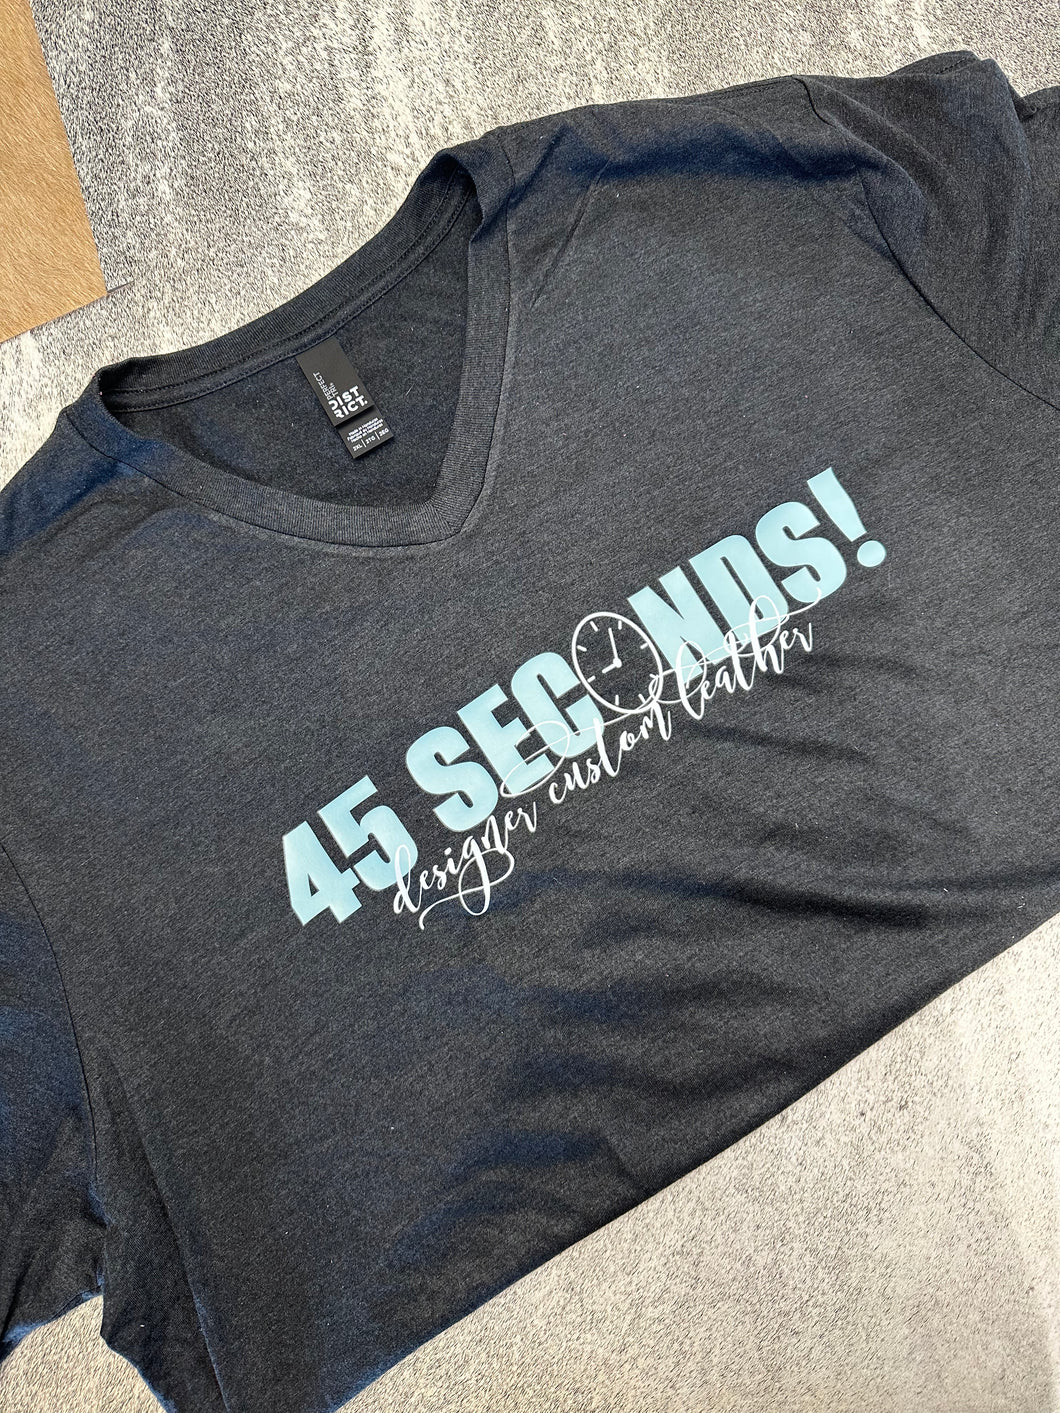 45 Seconds T Shirt Mint Logo